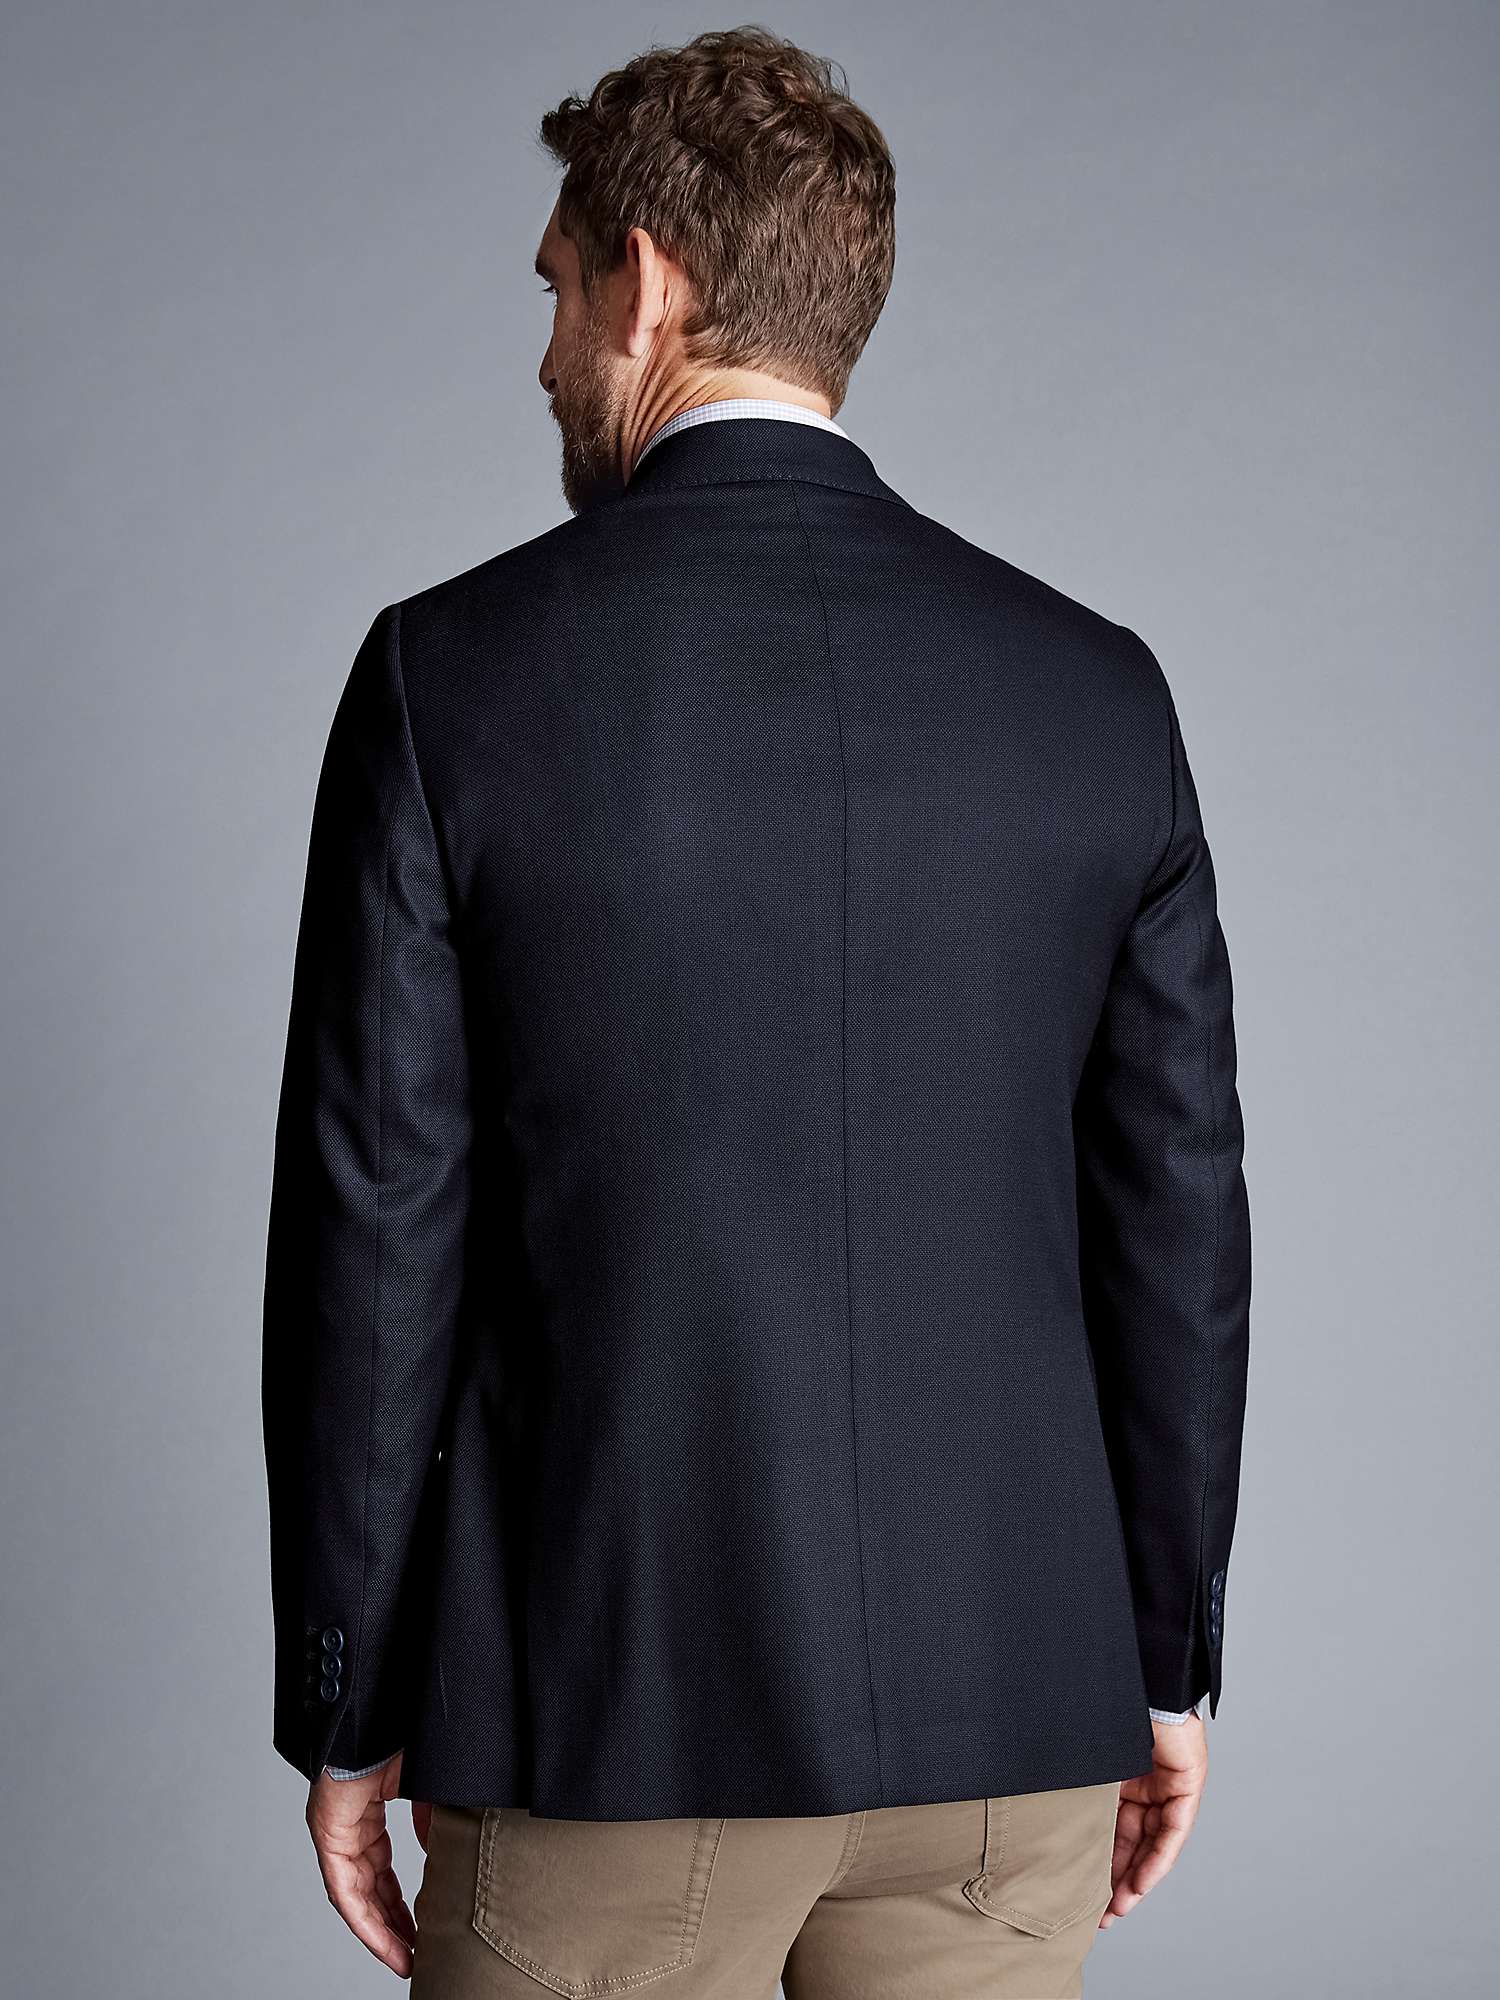 Buy Charles Tyrwhitt Luxury Italian Slim Fit Suit Jacket, Navy Online at johnlewis.com